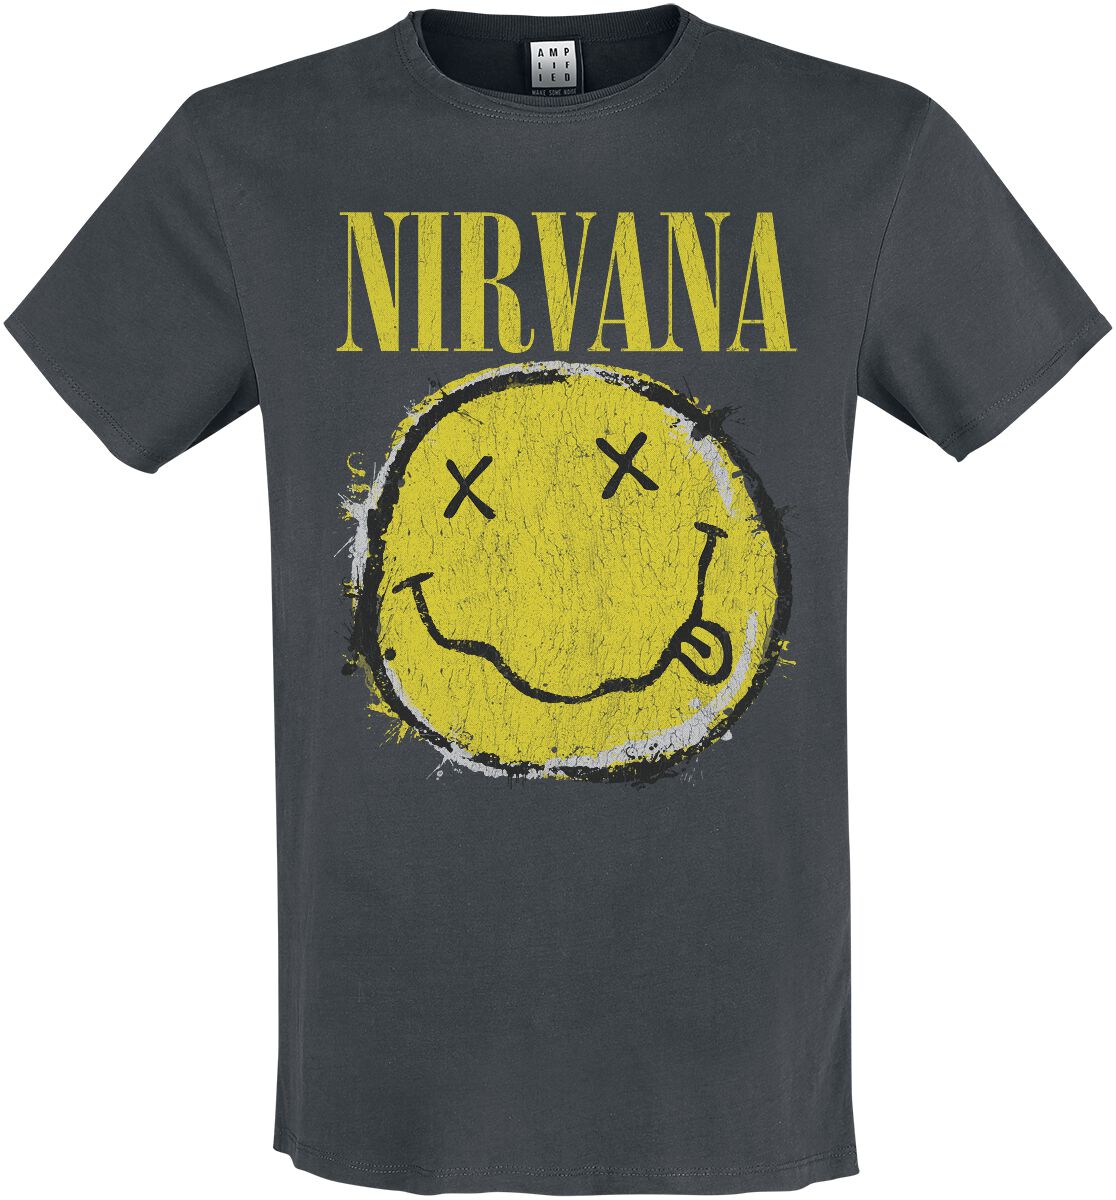 Nirvana T-Shirt - Amplified Collection - Worn Out Smiley - S bis 3XL - für Männer - Größe S - charcoal  - Lizenziertes Merchandise!